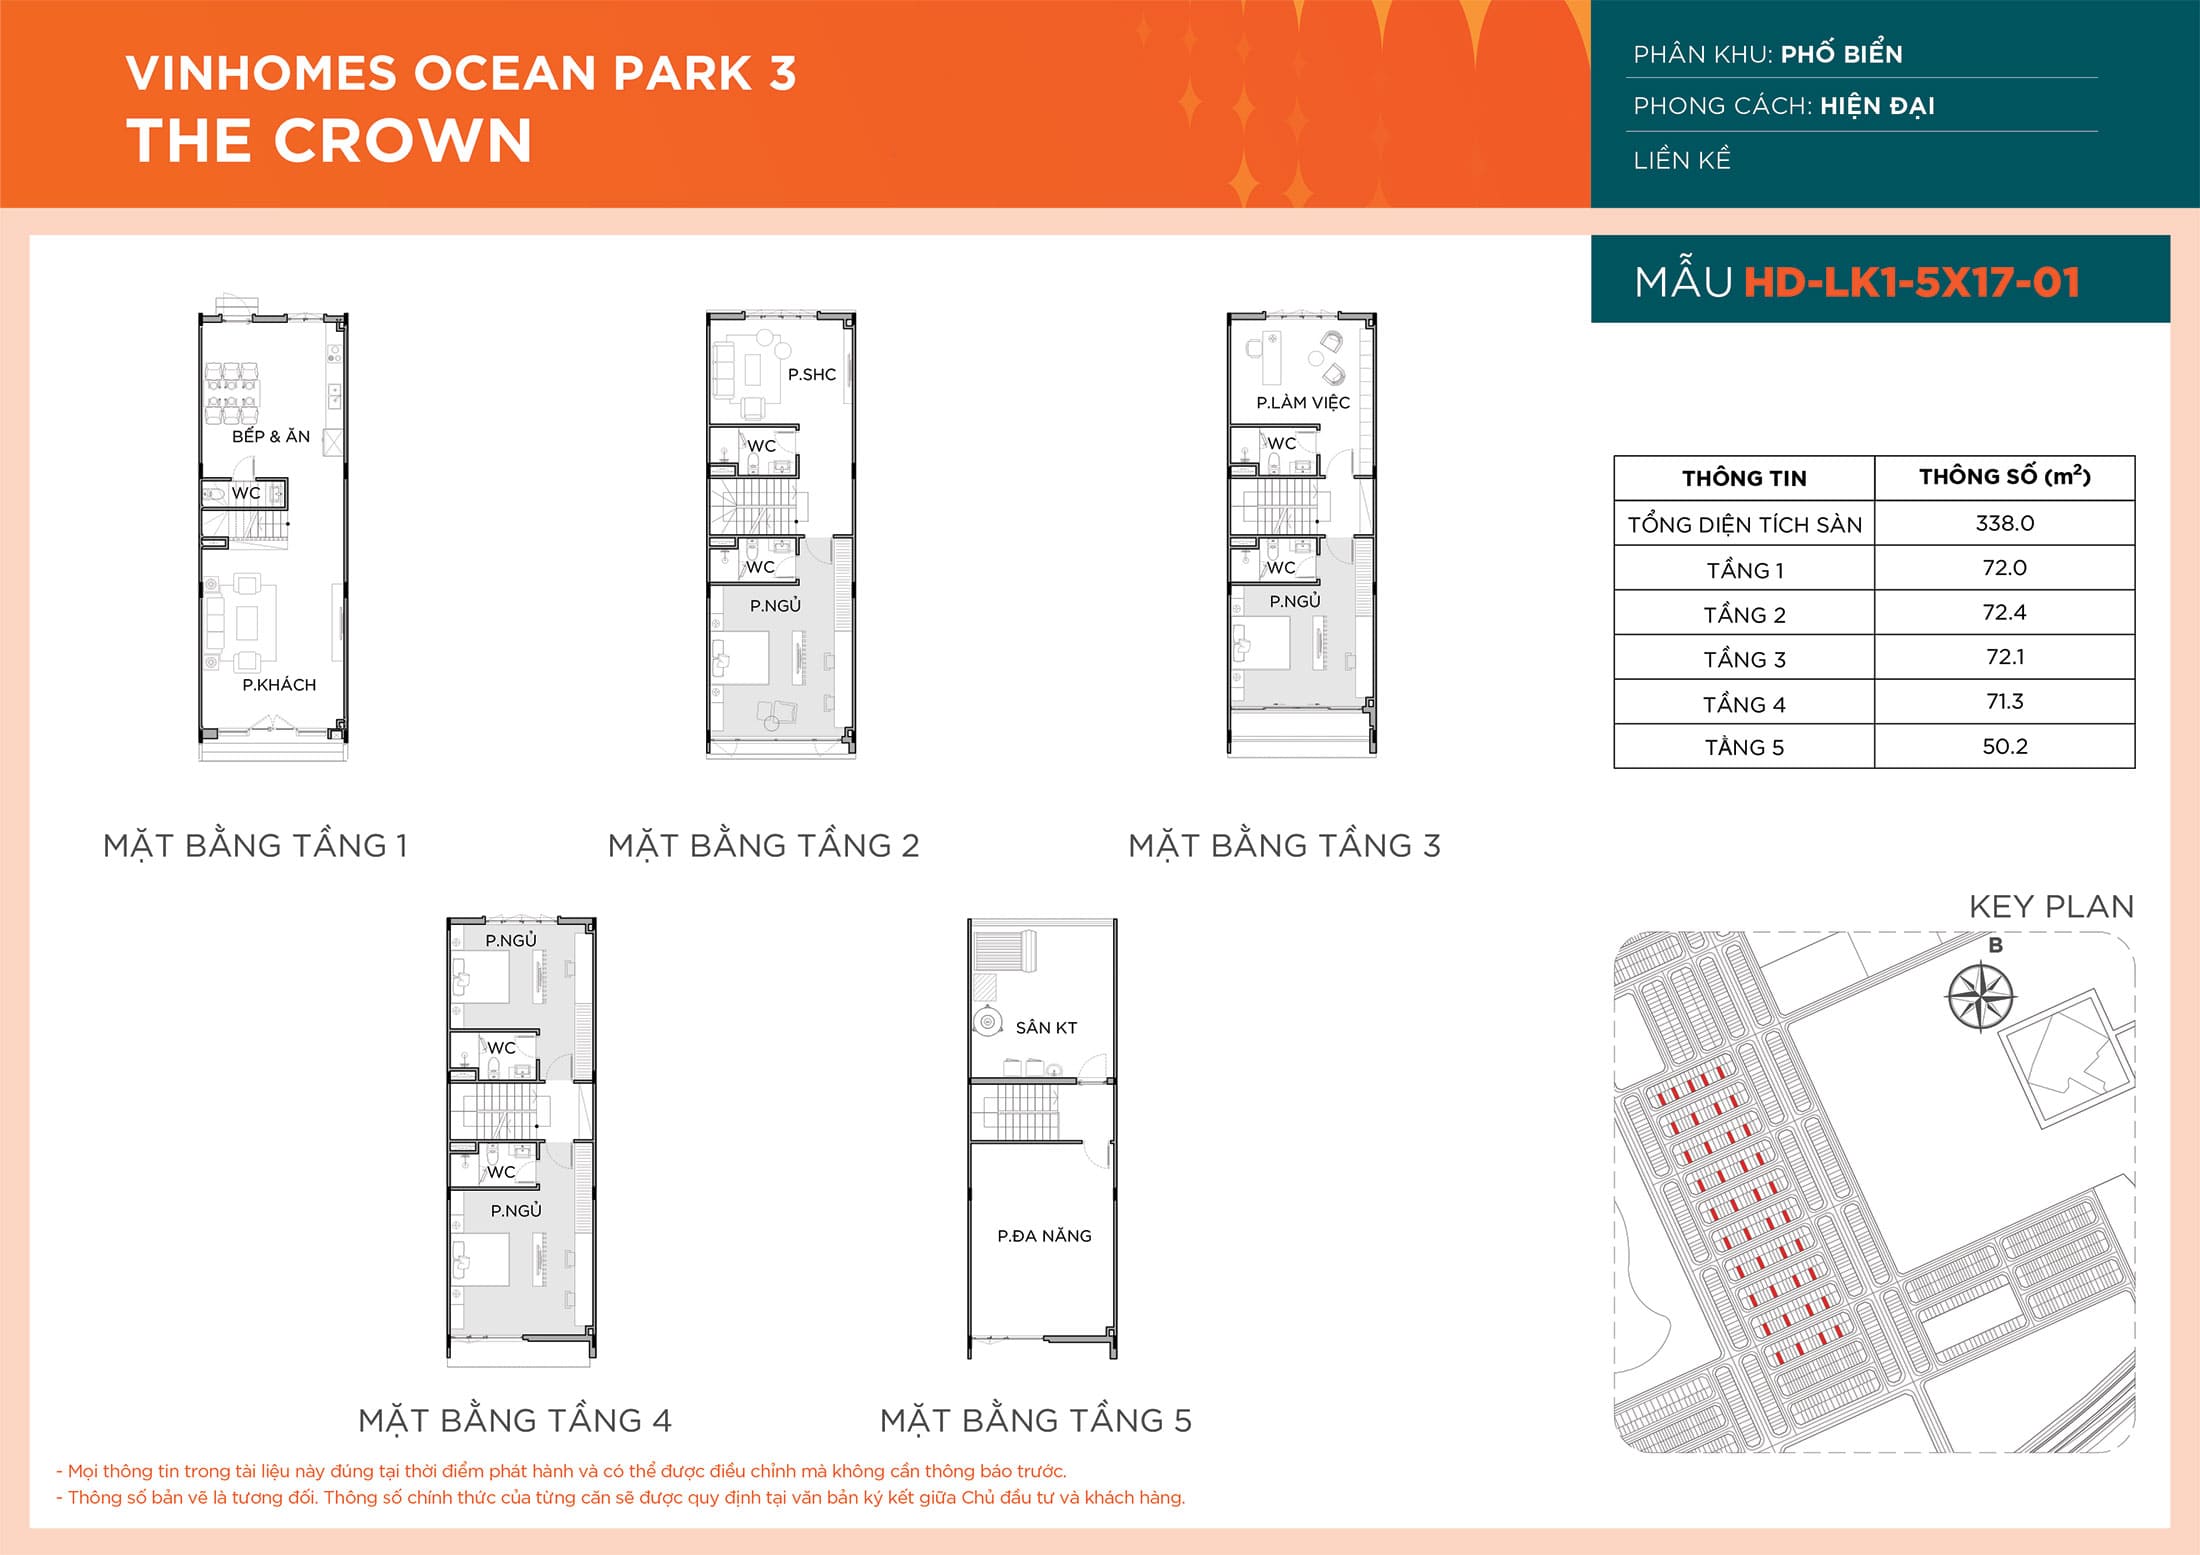 Layout thiết kế Liền Kề HD-LK1-5X17-01 phân khu Phố Biển dự án Vinhomes Ocean Park 3 - The Crown.